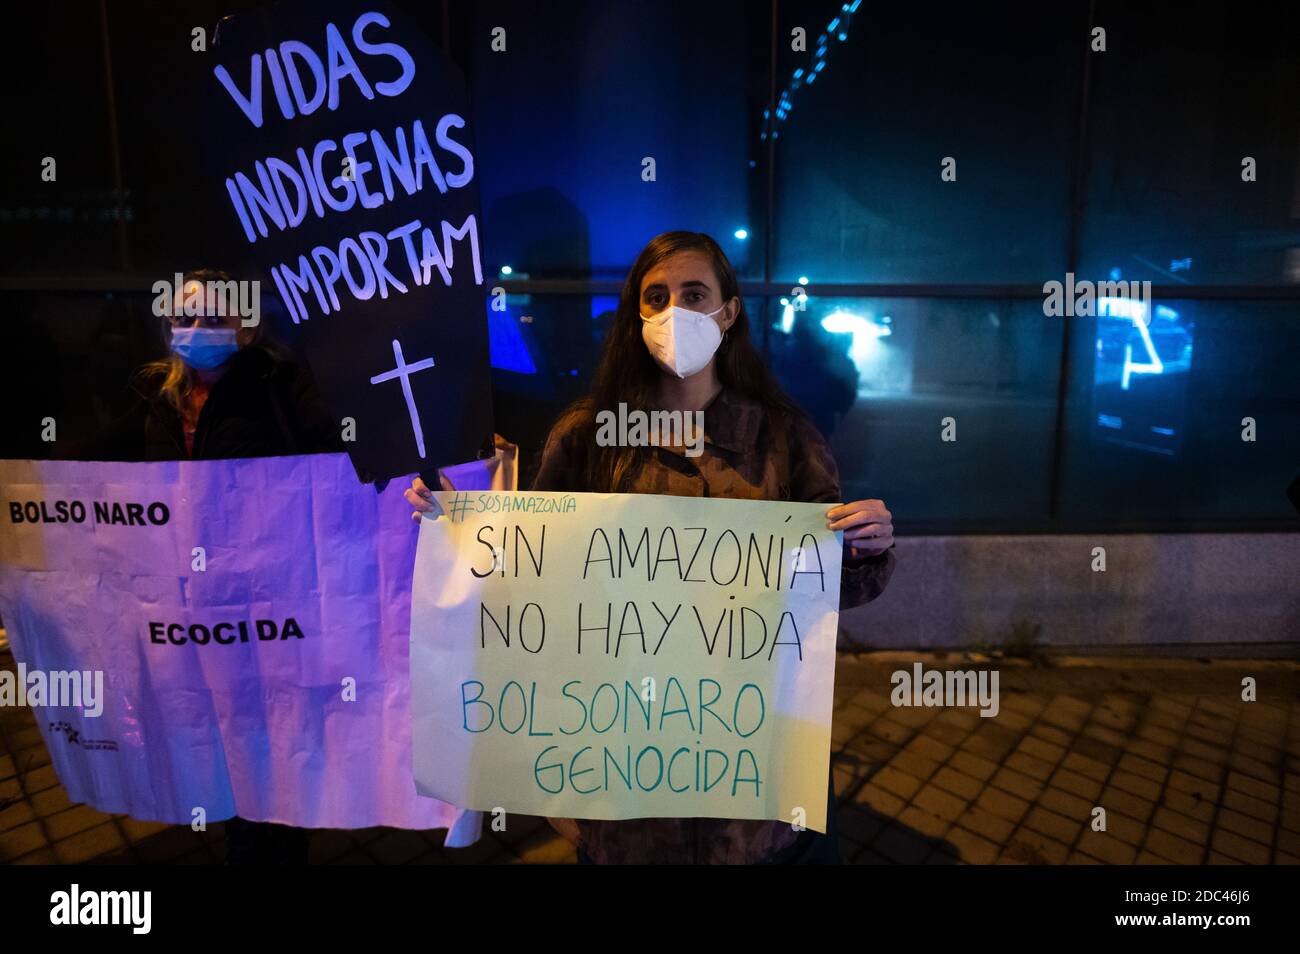 Madrid, Spanien. November 2020. Menschen protestieren mit Plakaten gegen den brasilianischen Präsidenten J. Bolsonaro und das Handelsabkommen EU-Mercosur und fordern ein Ende der Verletzung der Menschenrechte und der Zerstörung der Natur. Quelle: Marcos del Mazo/Alamy Live News Stockfoto